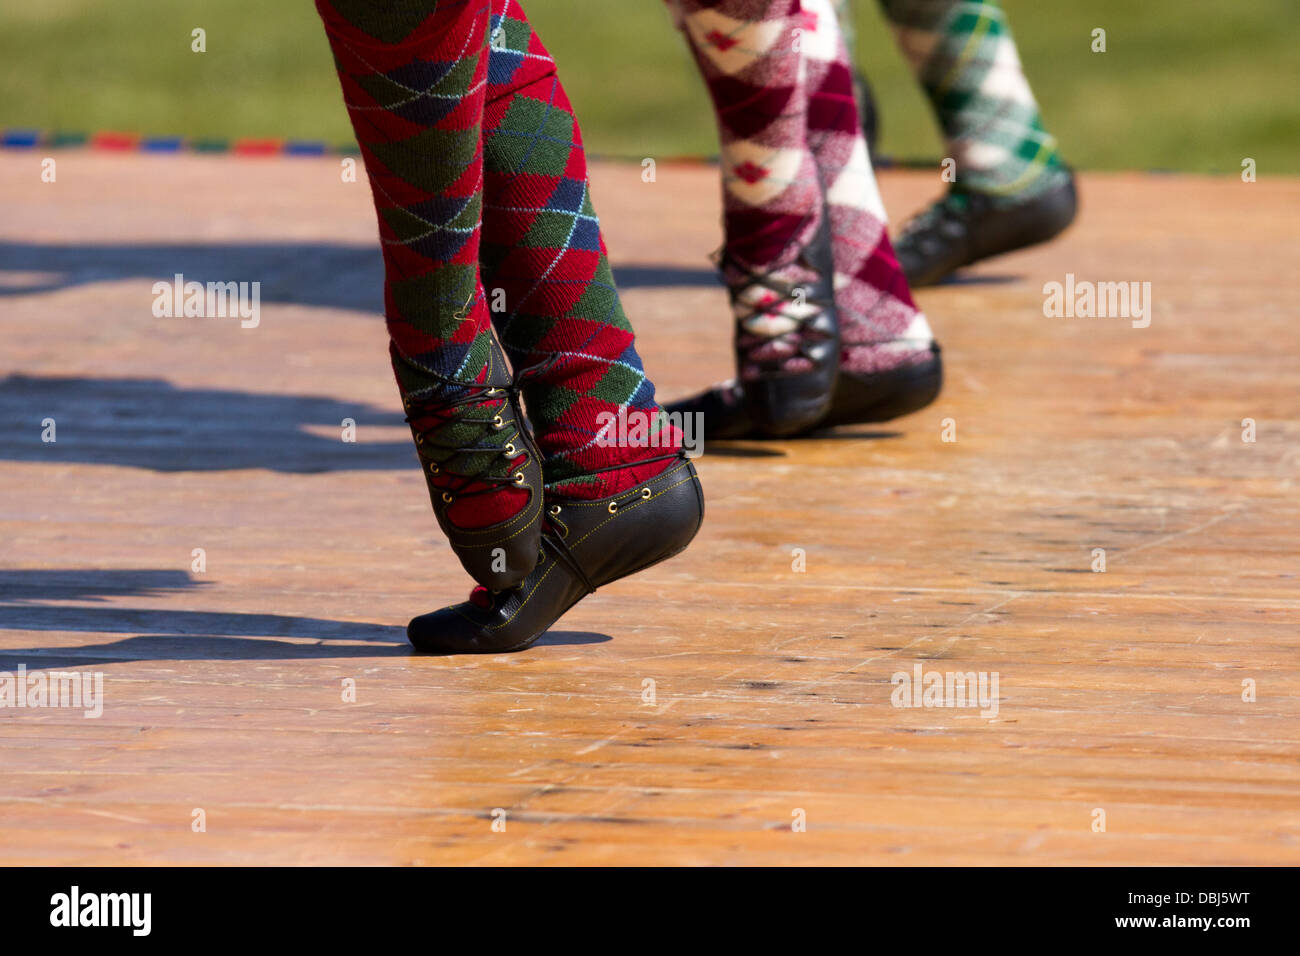 Les enfants, les pieds, les bas, les jambes.highland écossais danseurs du tambour lors de l'Assemblée Tomintoul Highland Games et de collecte d'Ecosse, Royaume-Uni. Juillet, 2013. Banque D'Images